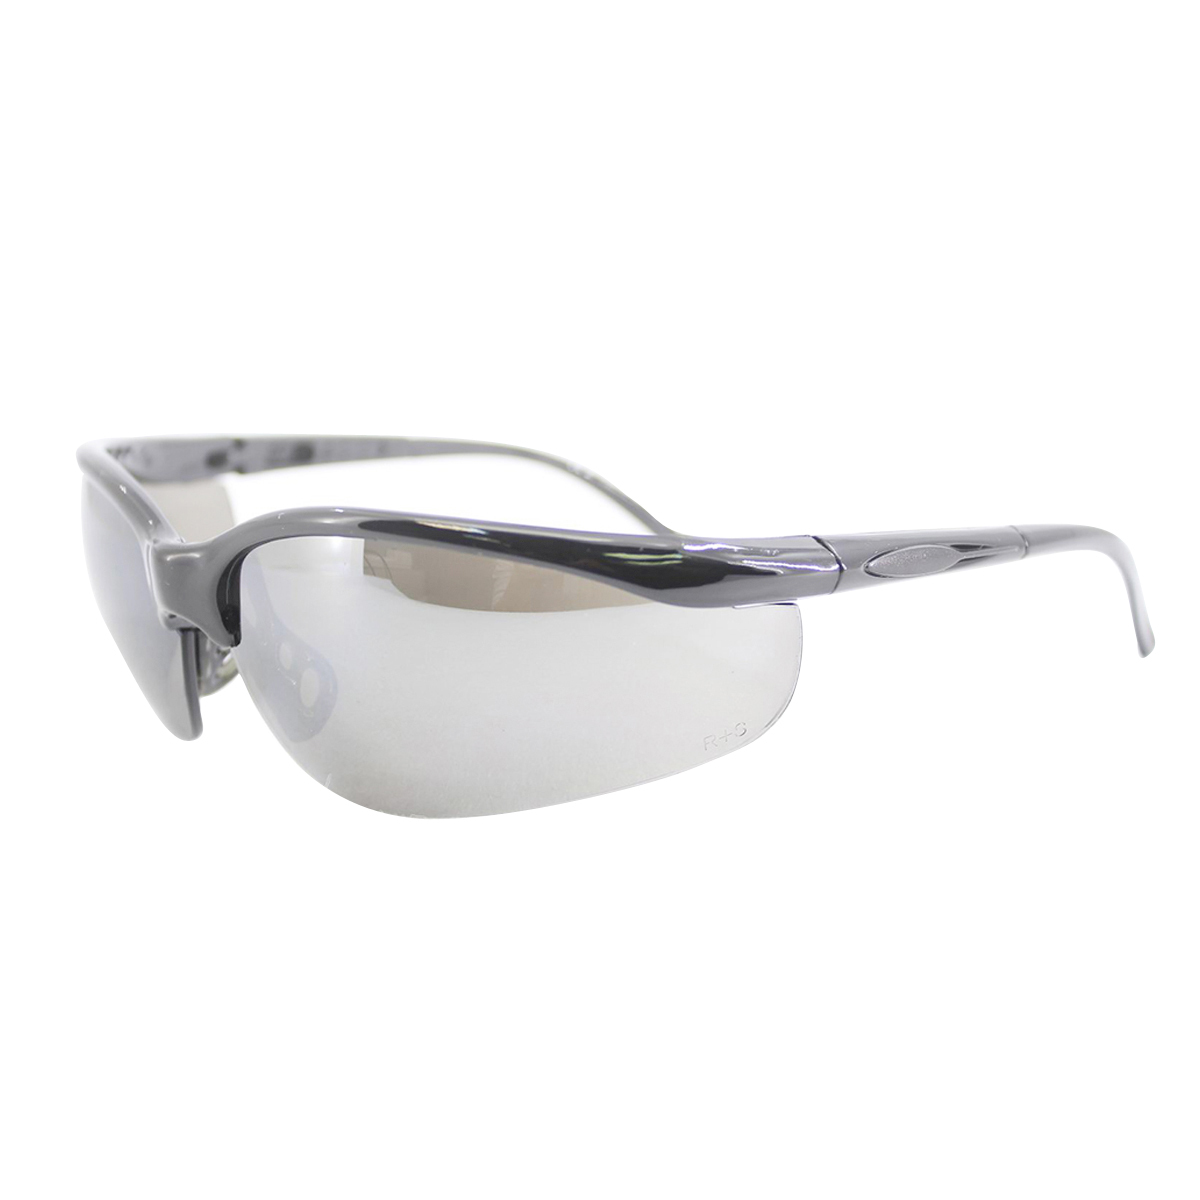 Stanley RST-61010 Bandit Premium Fashion Safety Glasses Sliver Frame Blue Mirror Lens